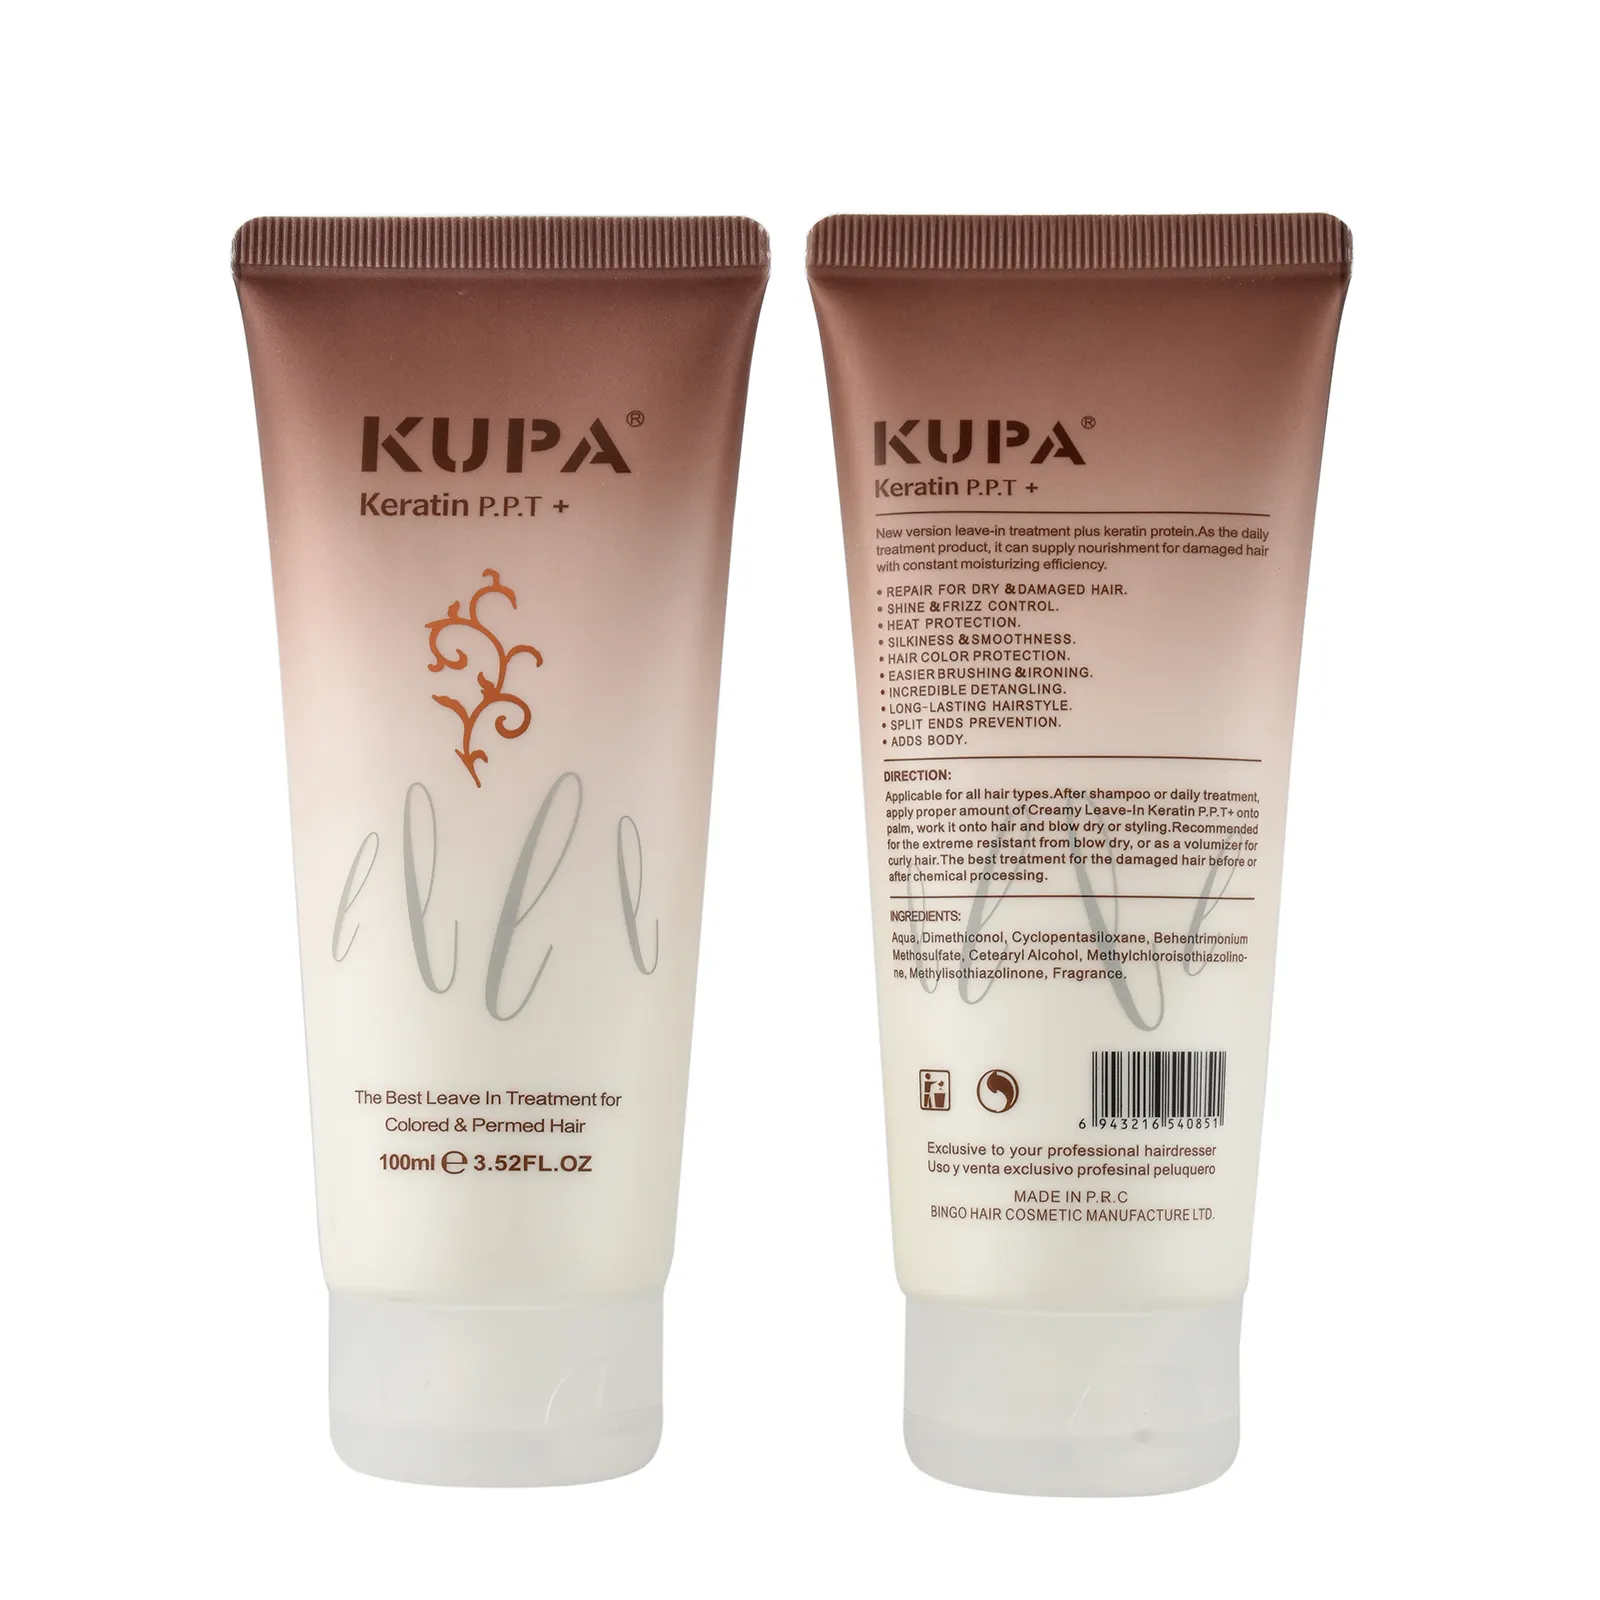 Kupa haute qualité bio à base de plantes extrait d'huile de noyau soins capillaires kératine profondément réparer les cheveux P.P.T sans rinçage conditionneur